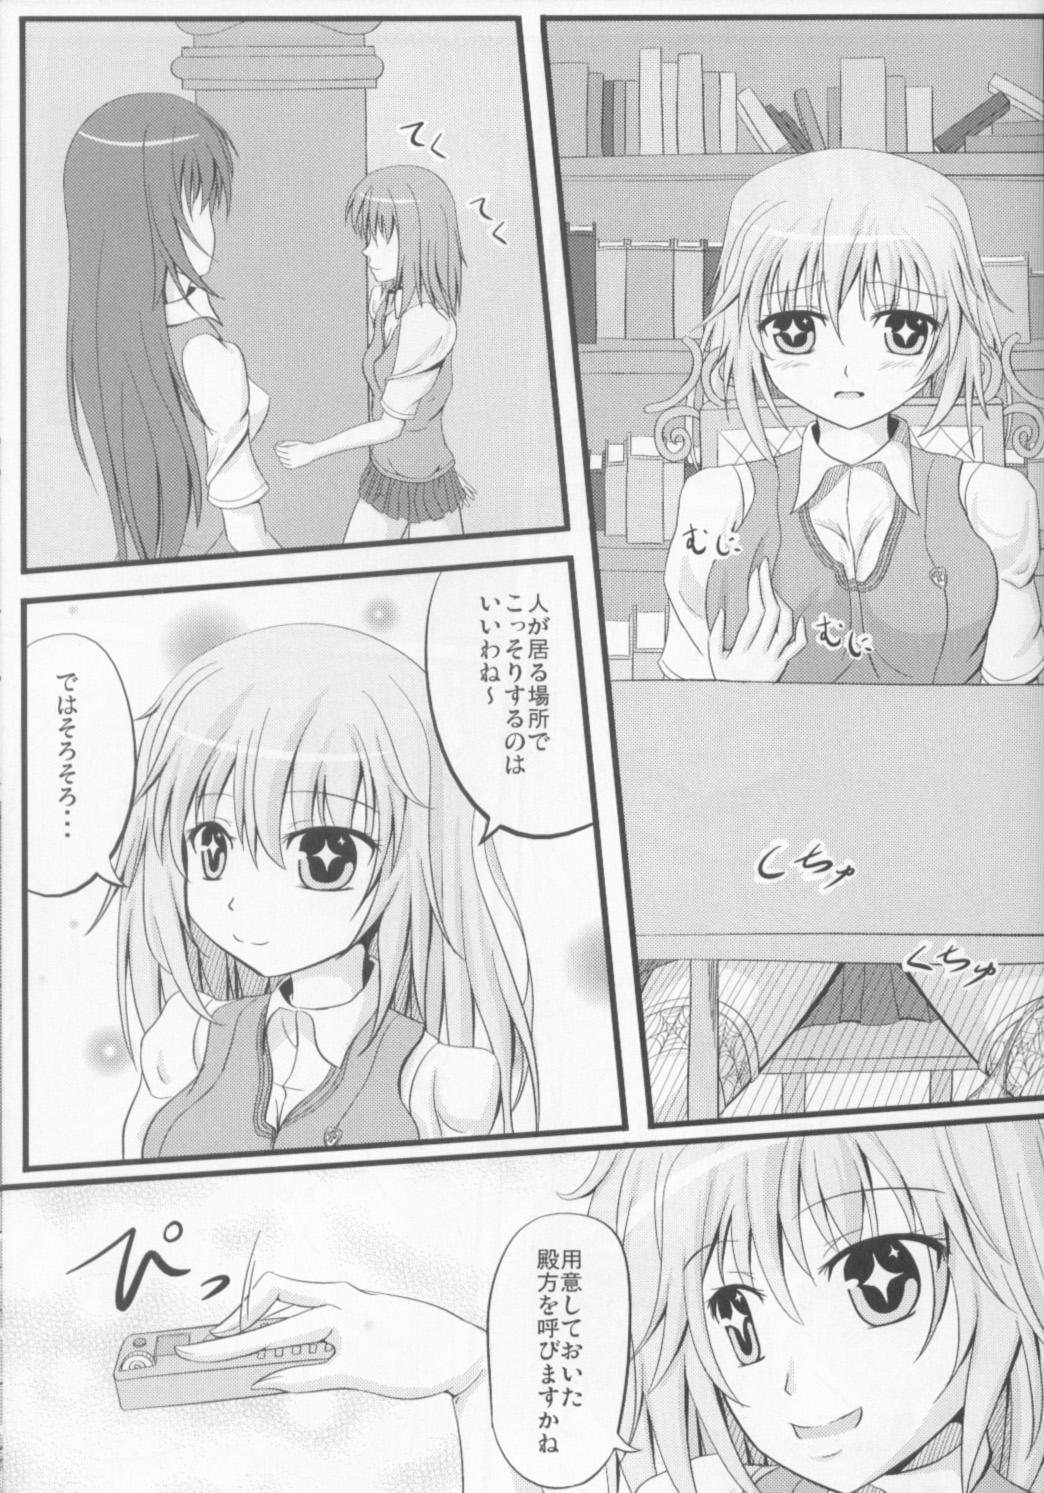 Women Shokuhou san ni Konna Mental Out saretai - Toaru kagaku no railgun Wild Amateurs - Page 4